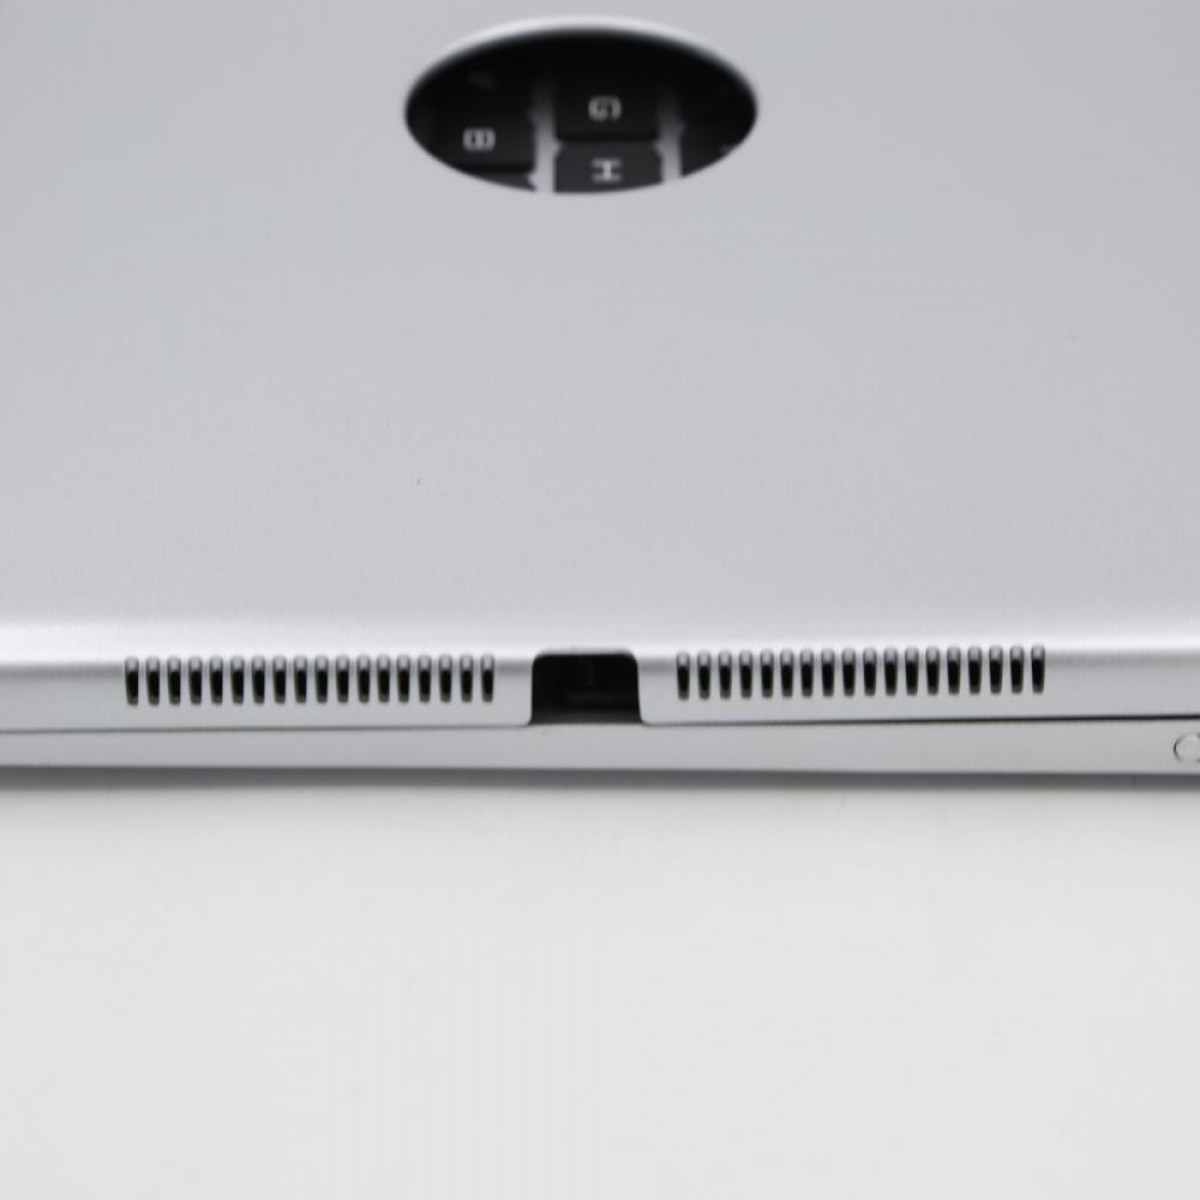 Bluetooth-Tastatur für Air Tastatur-Hülle iPad / Pro mit Schutzhülle INF 9.7 1/2,